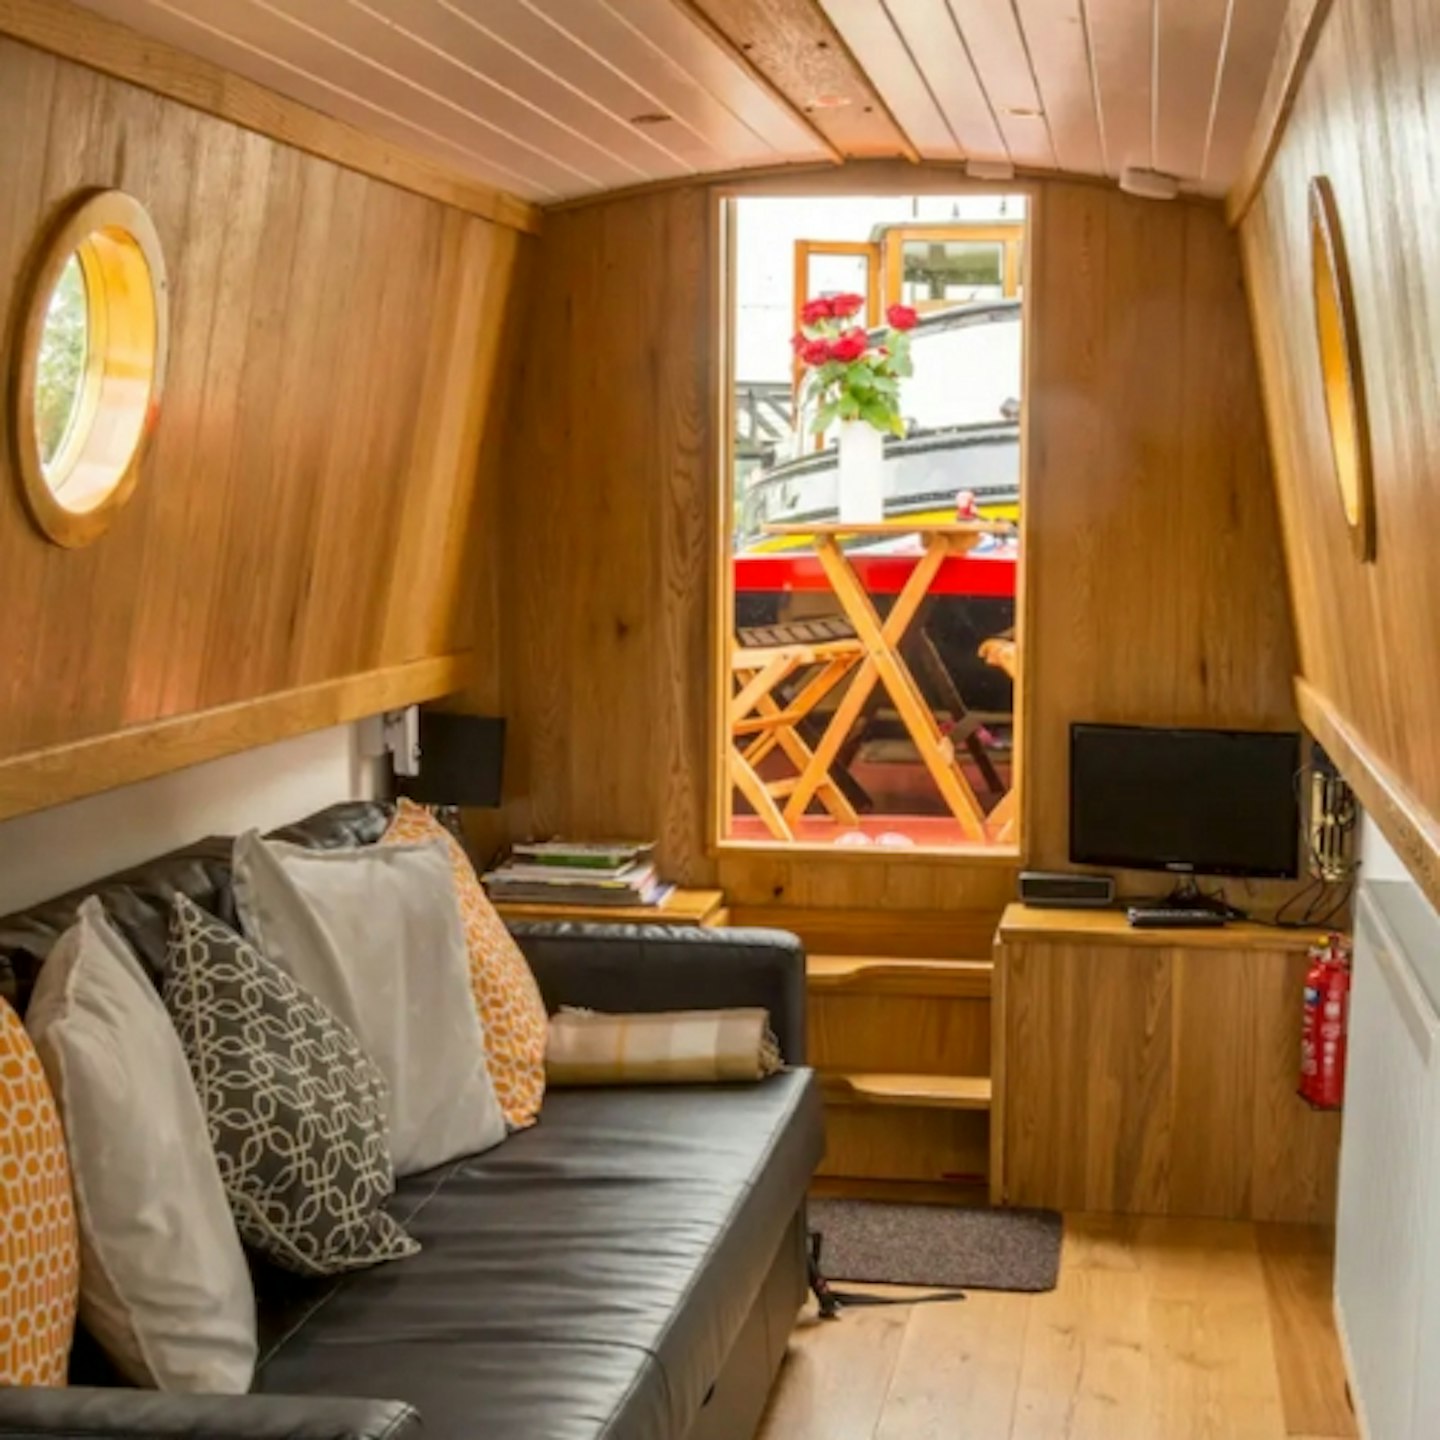 Puzzle, The Luxury Narrowboat